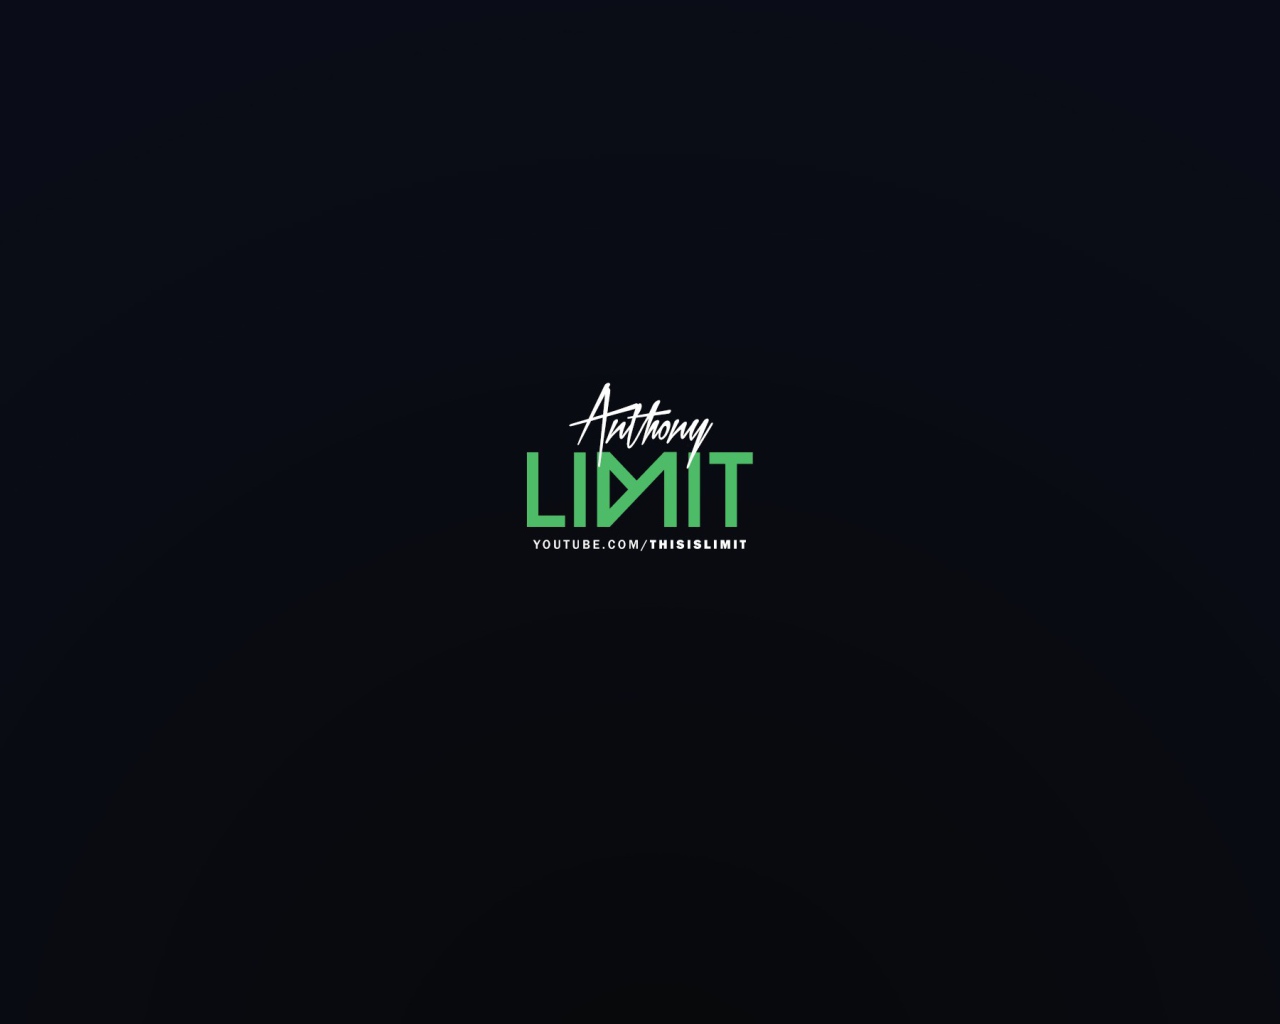 Limit Beats зеленые буквы